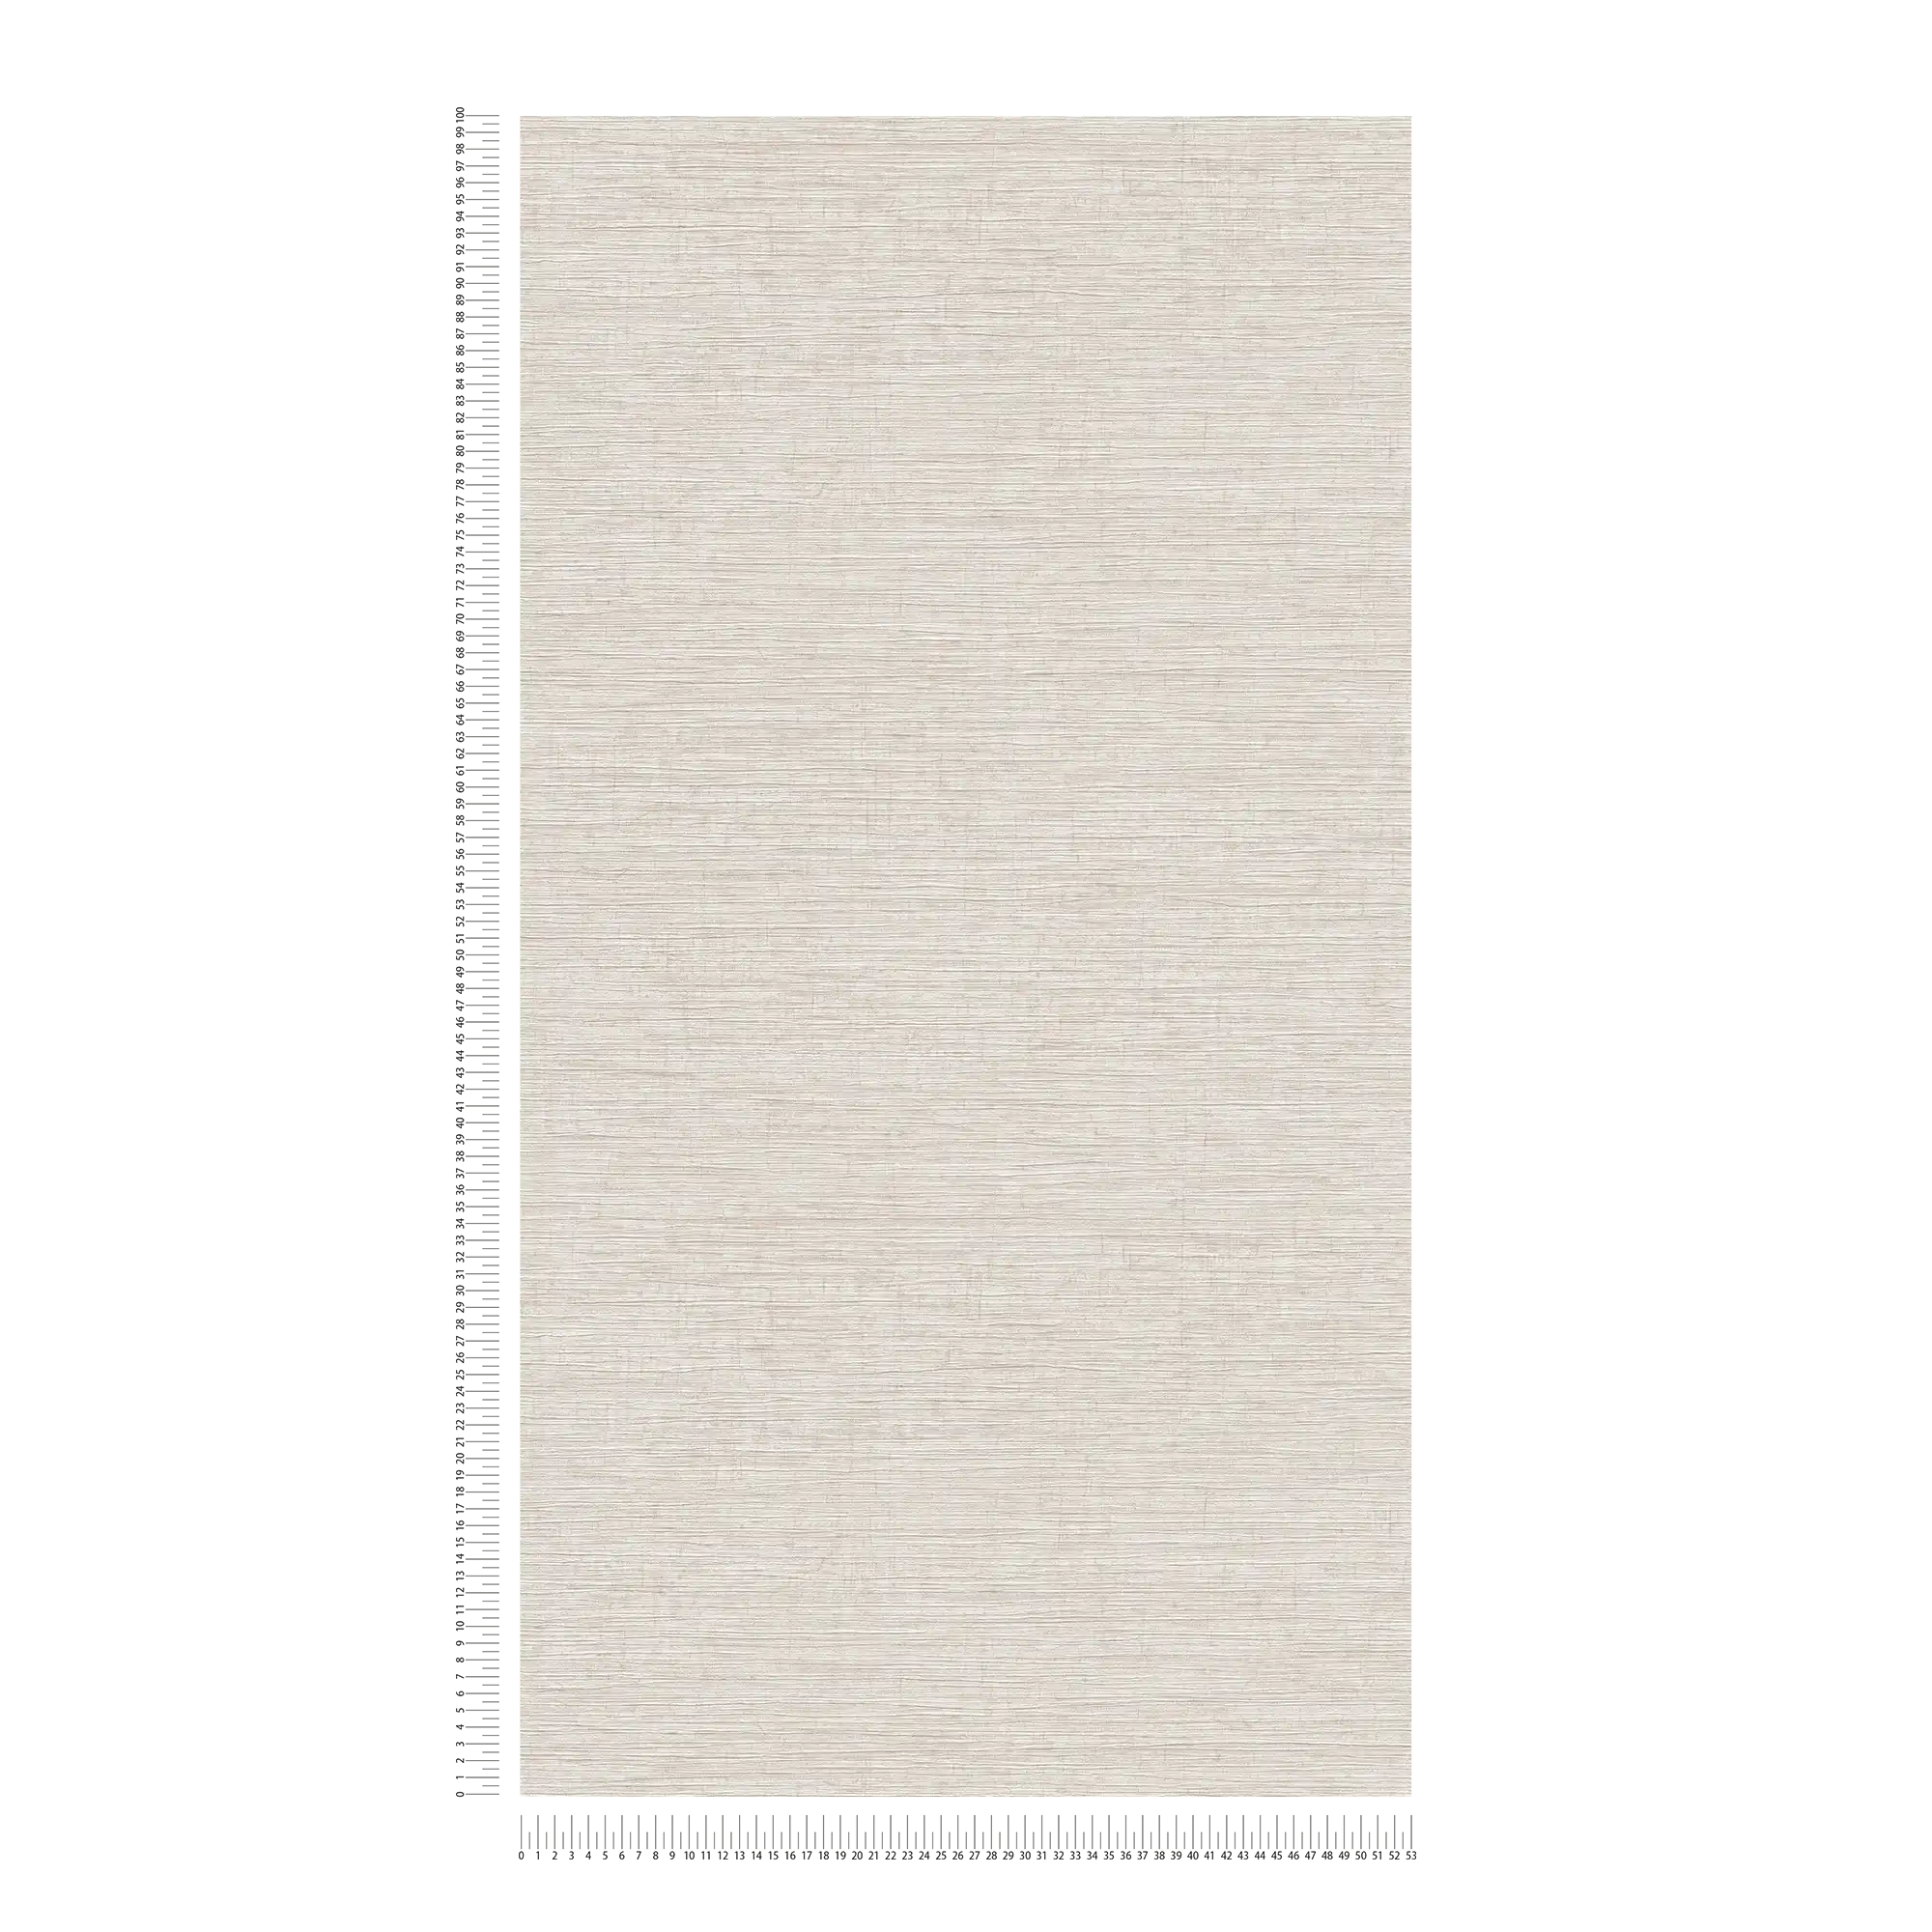             Carta da parati in tessuto non tessuto screziata con motivi tessili in rilievo - beige, marrone, grigio
        